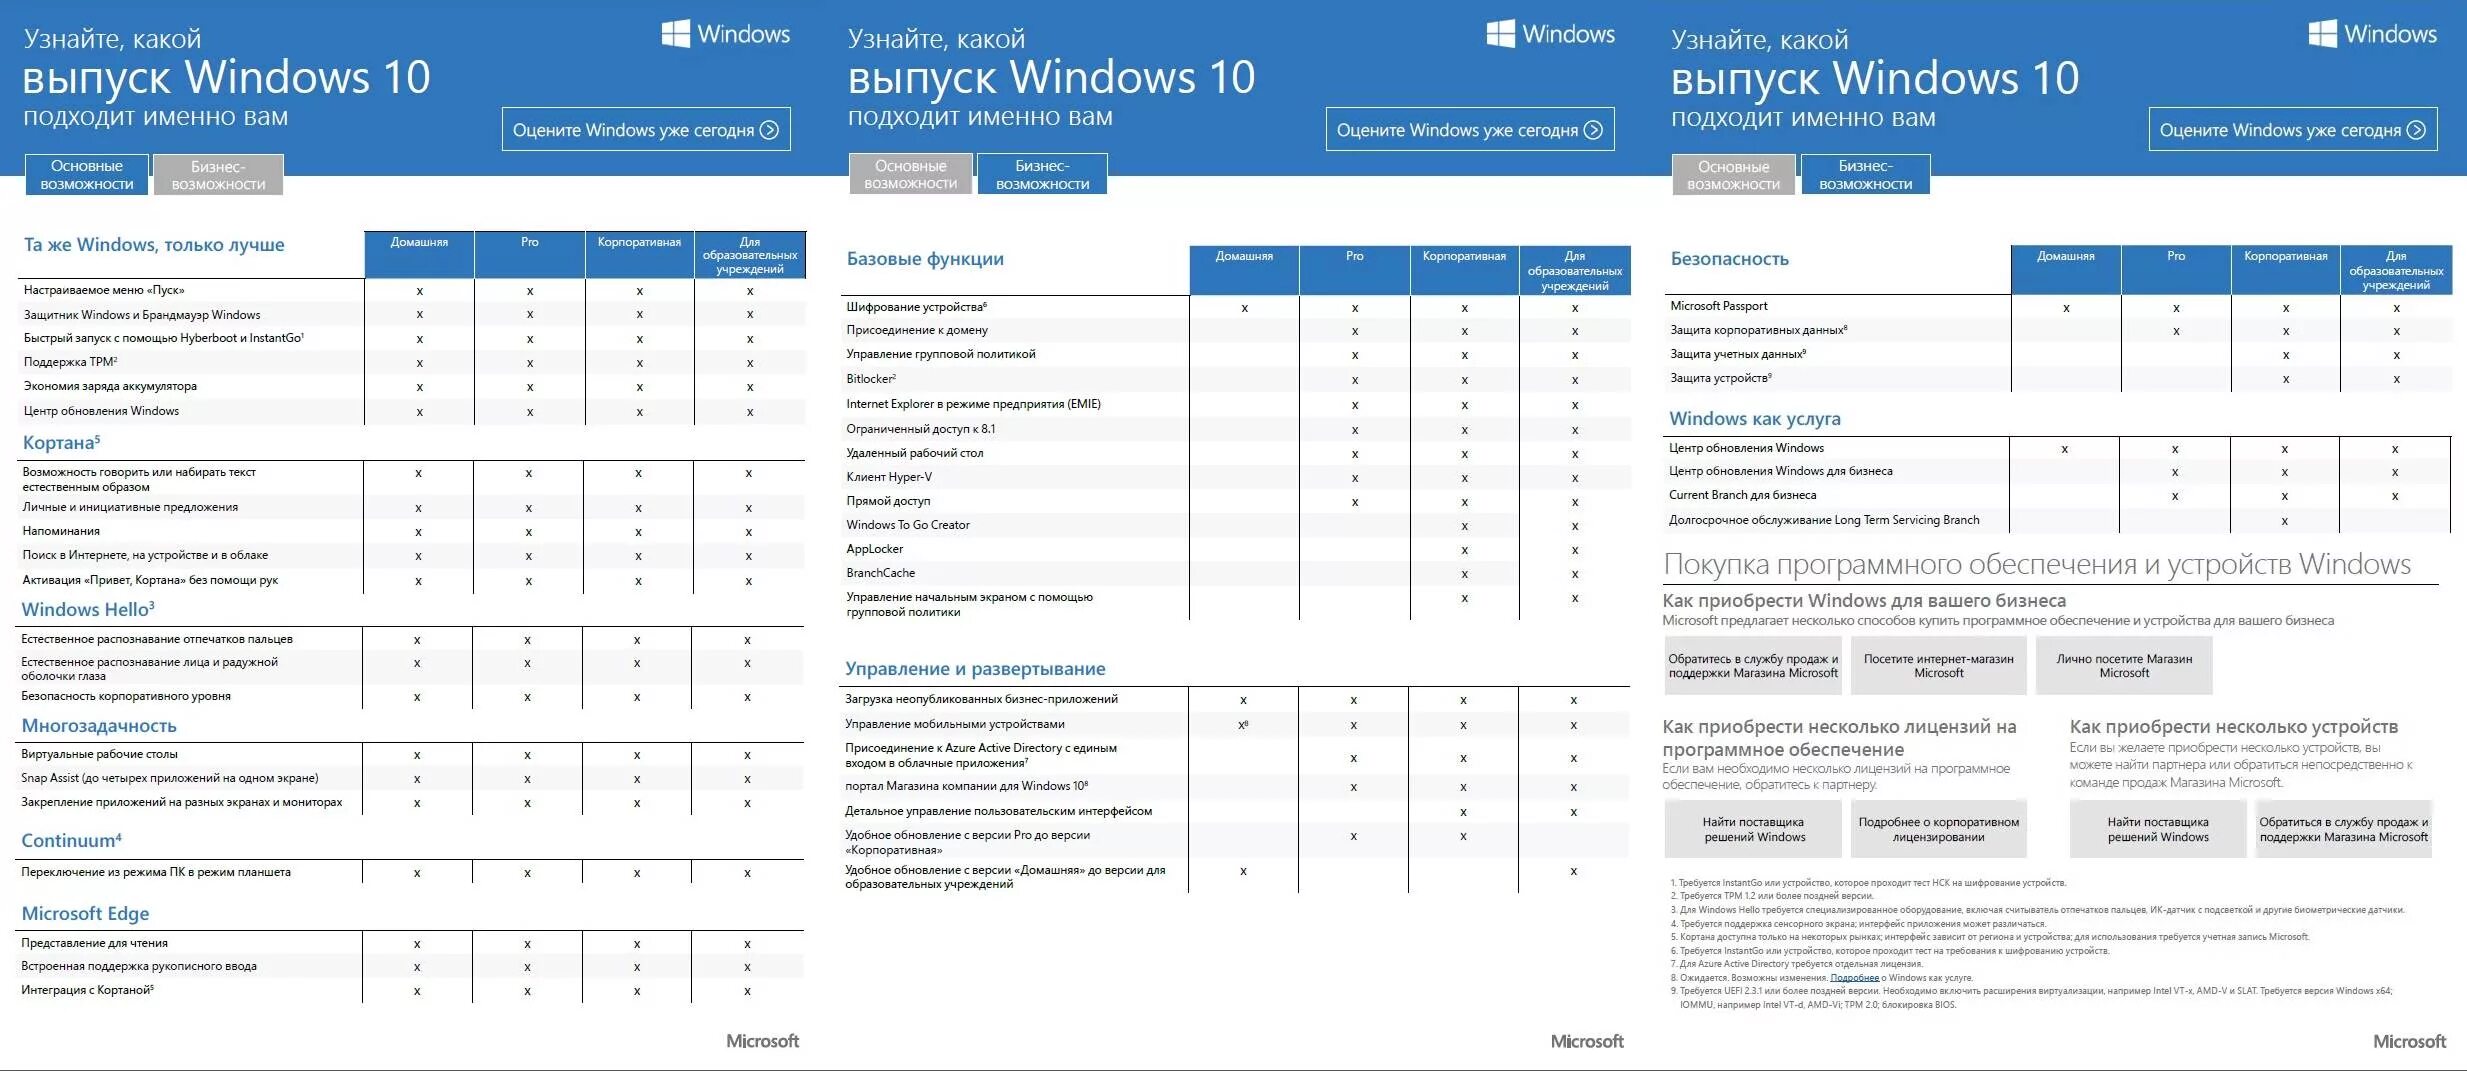 Редакции Windows 10 таблица. Редакции виндовс 7 таблица. Сравнение редакций Windows. Таблица редакций виндовс 10. Виндовс 10 разница